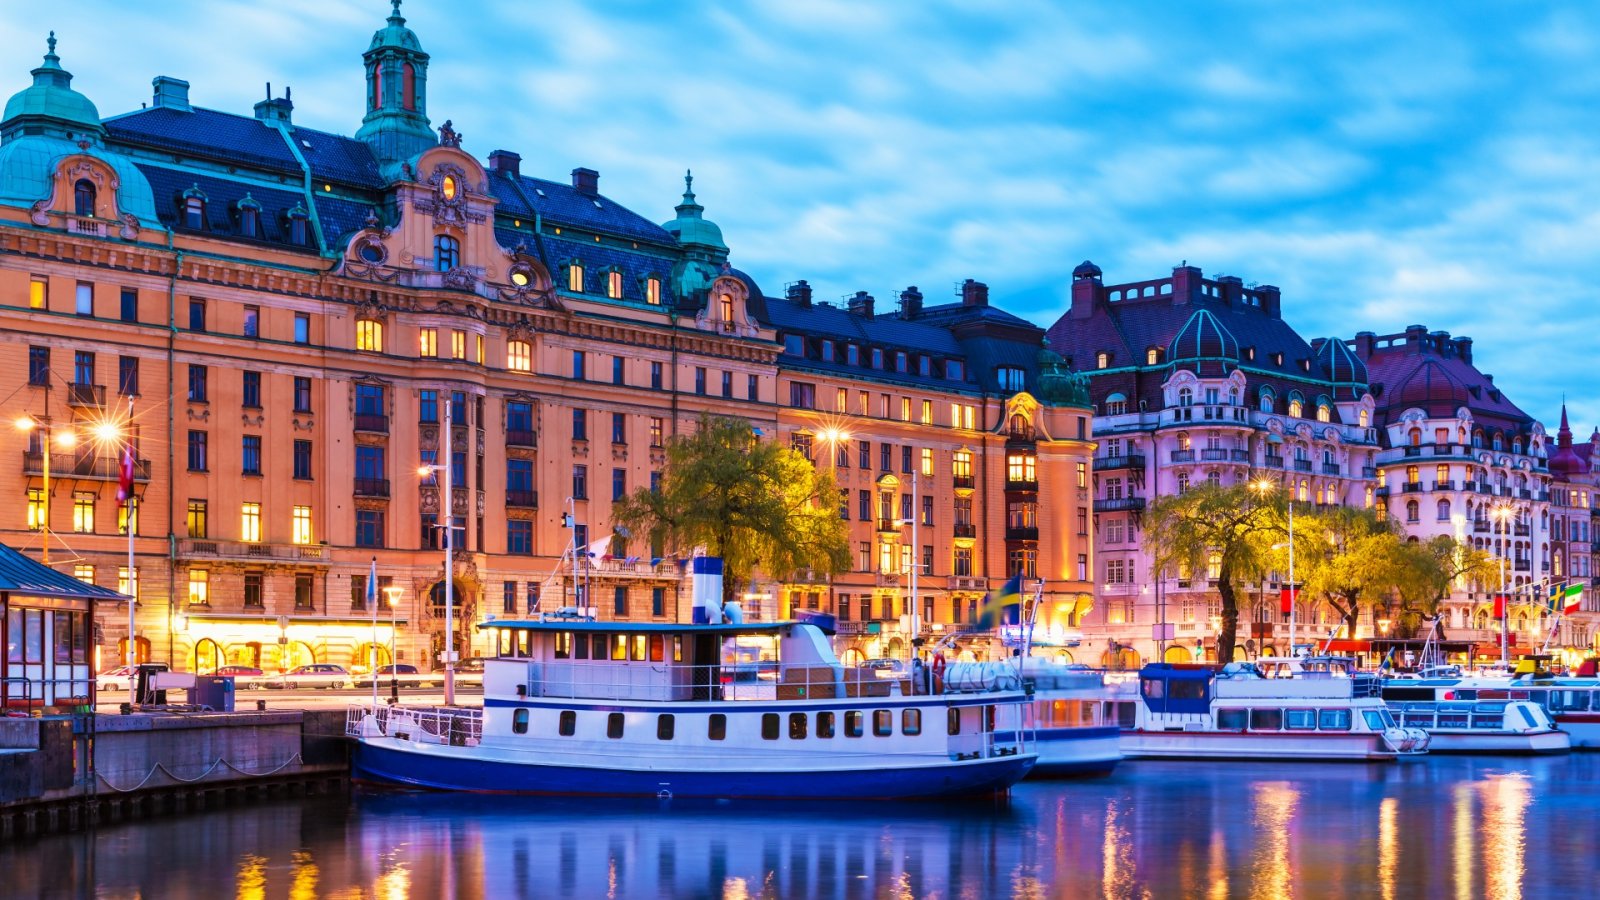 Din nemme rejseguide til Stockholm: afdække øens by